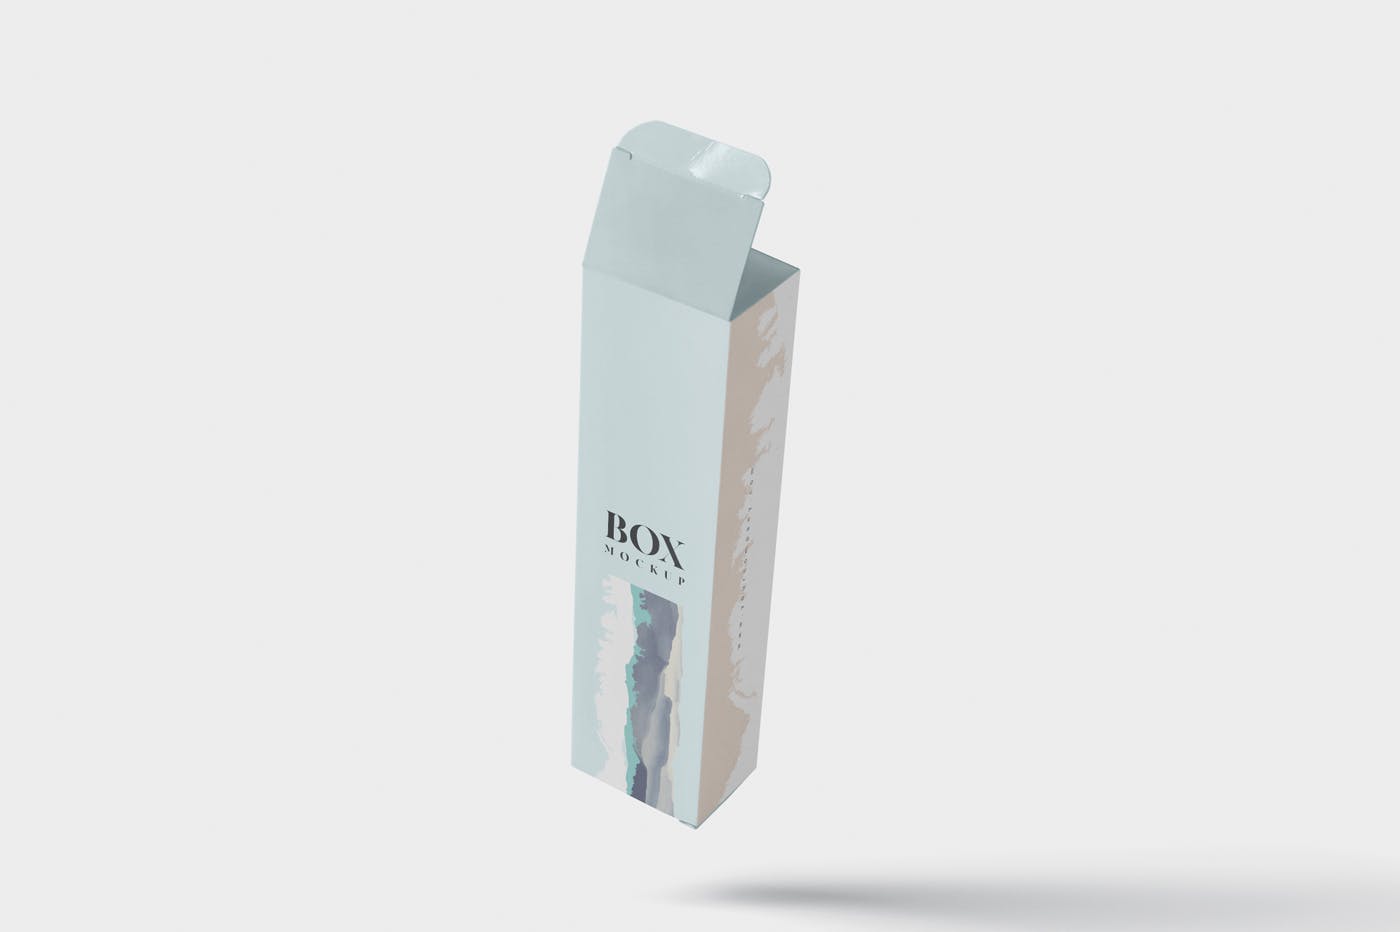 长条形化妆品/护肤品包装纸盒设计图样机 Box Mockup – Slim High Rectangle Shape插图(3)